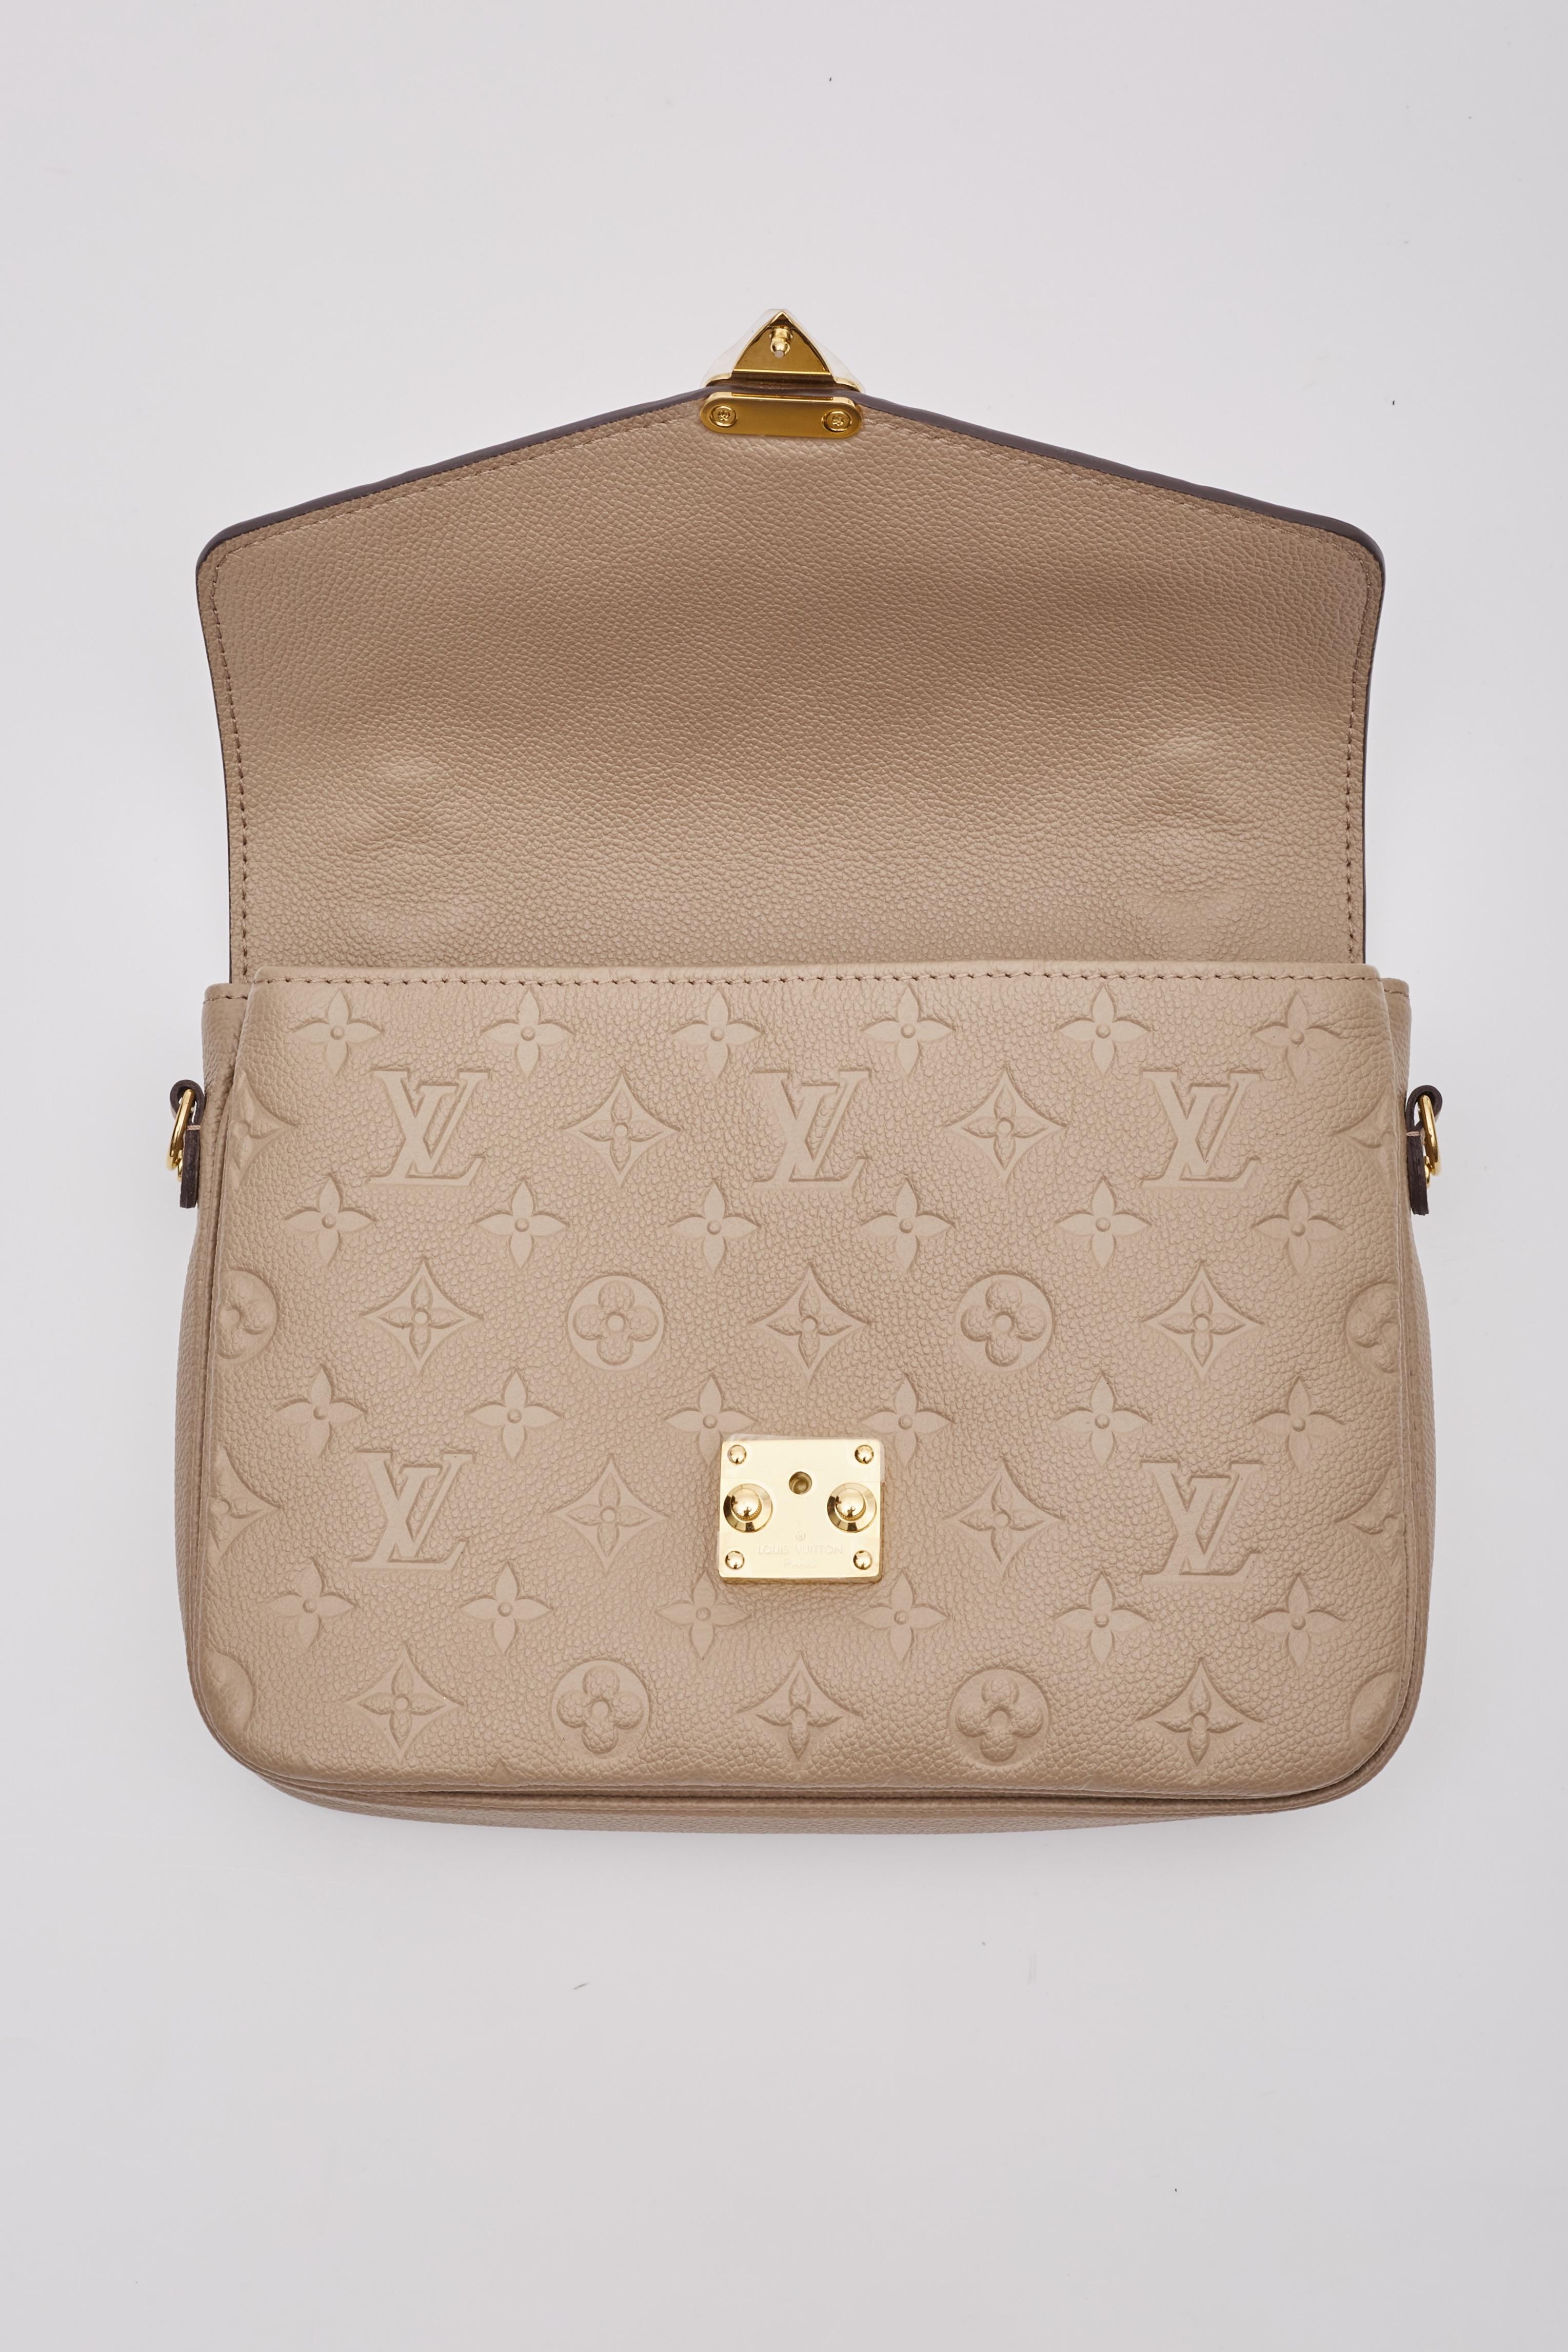 Louis Vuitton Empreinte Tourterelle Pochette Metis Shoulder Bag For Sale 6